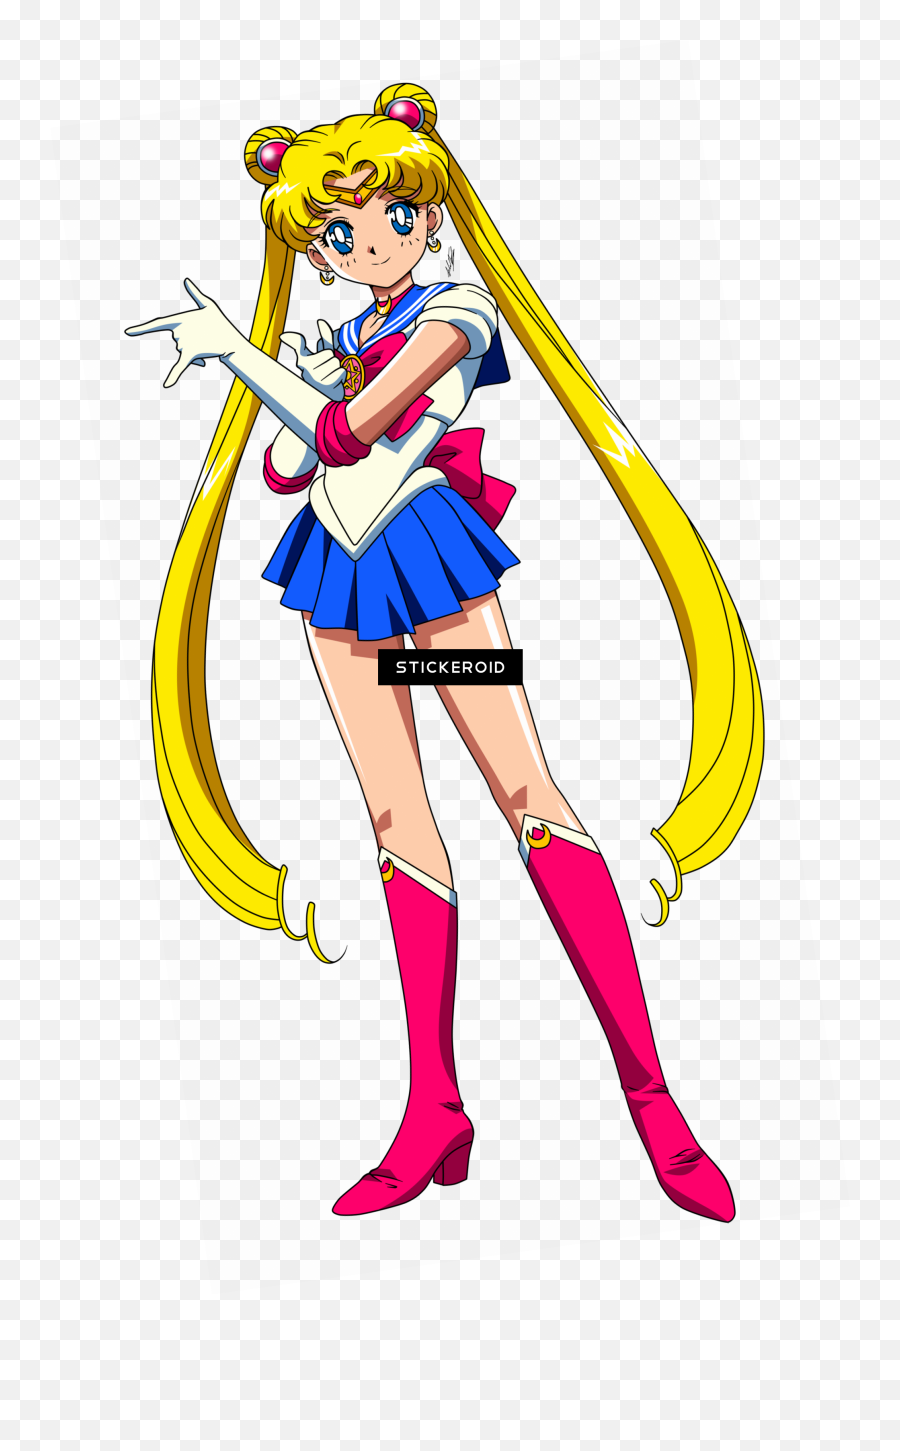 Download Hd Sailor Moon Sailormoon - Sailor Moon Pose Png,Sailor Moon Transparent